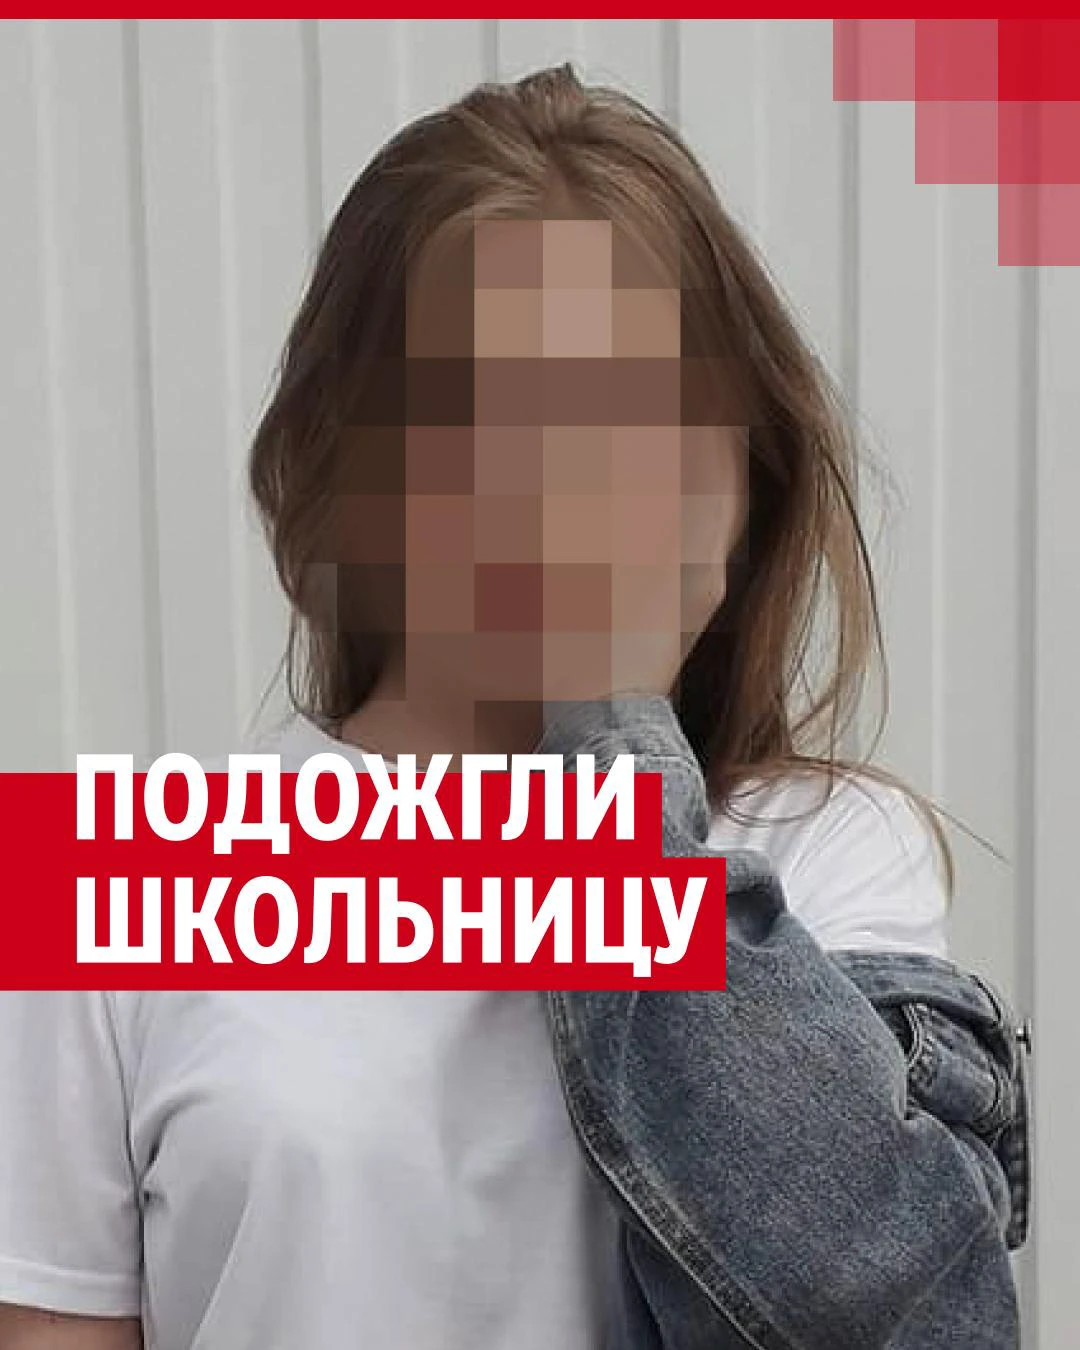 Купить памперсы для детей в Минске, заказать детские подгузники